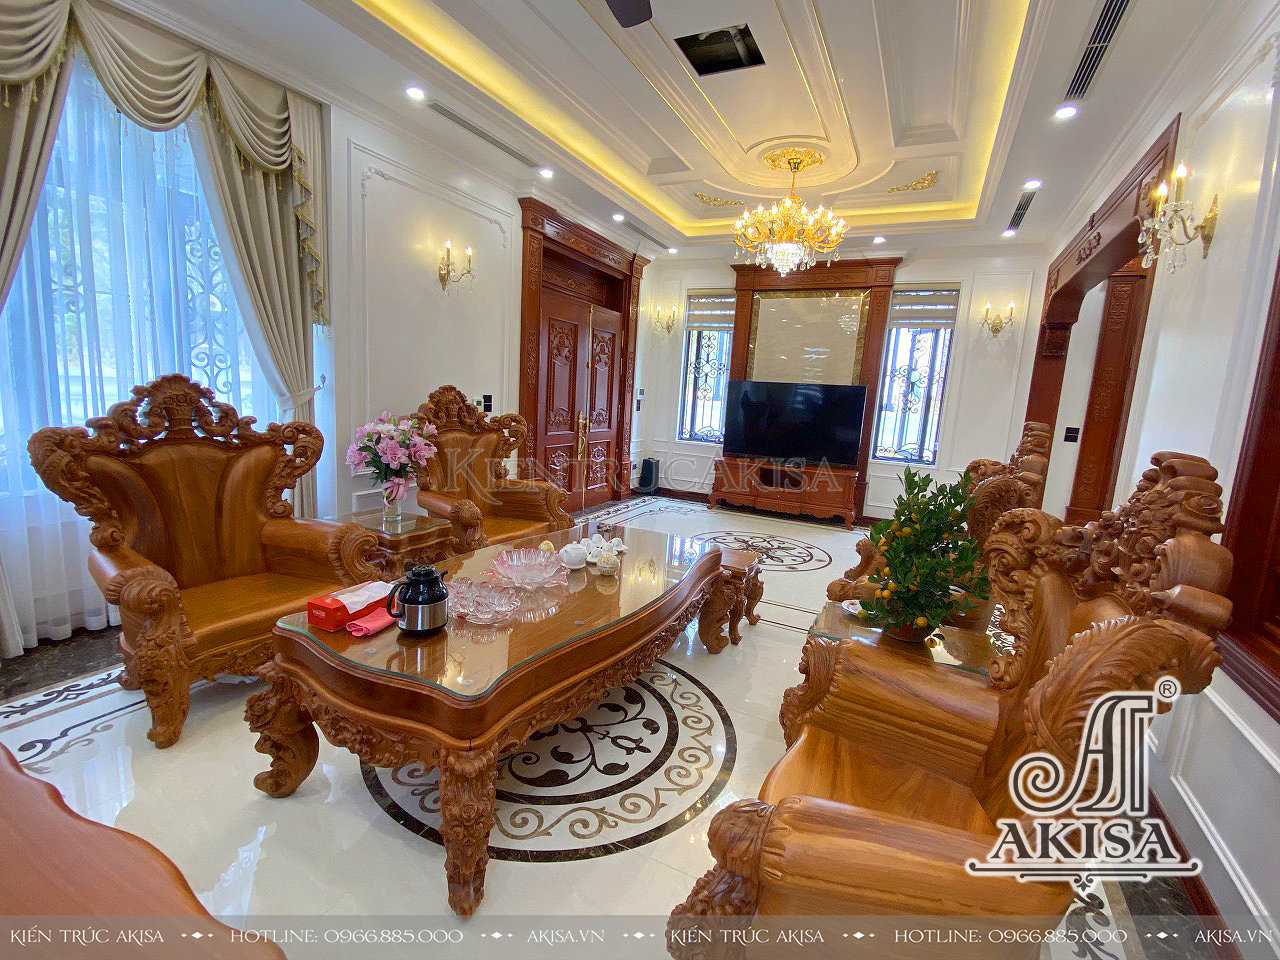 Hình ảnh hoàn thiện nội thất biệt thự 2 tầng tại Bắc Giang - HT22628-NT